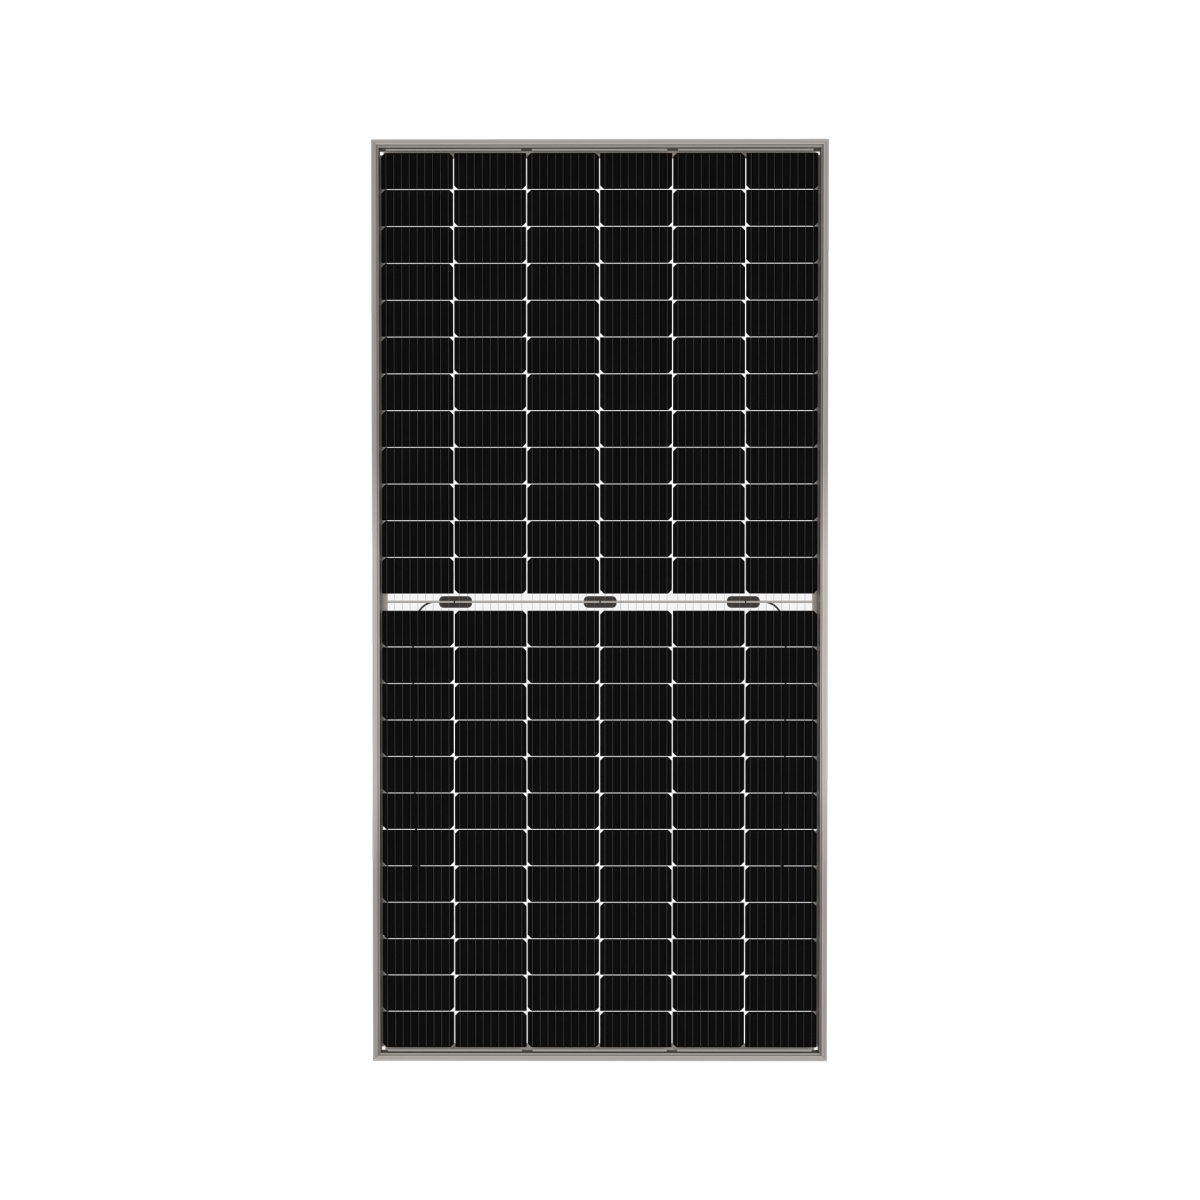 TommaTech 445Wp M6 144PM Cells Bifacial Half-Cut MB Solar Panel